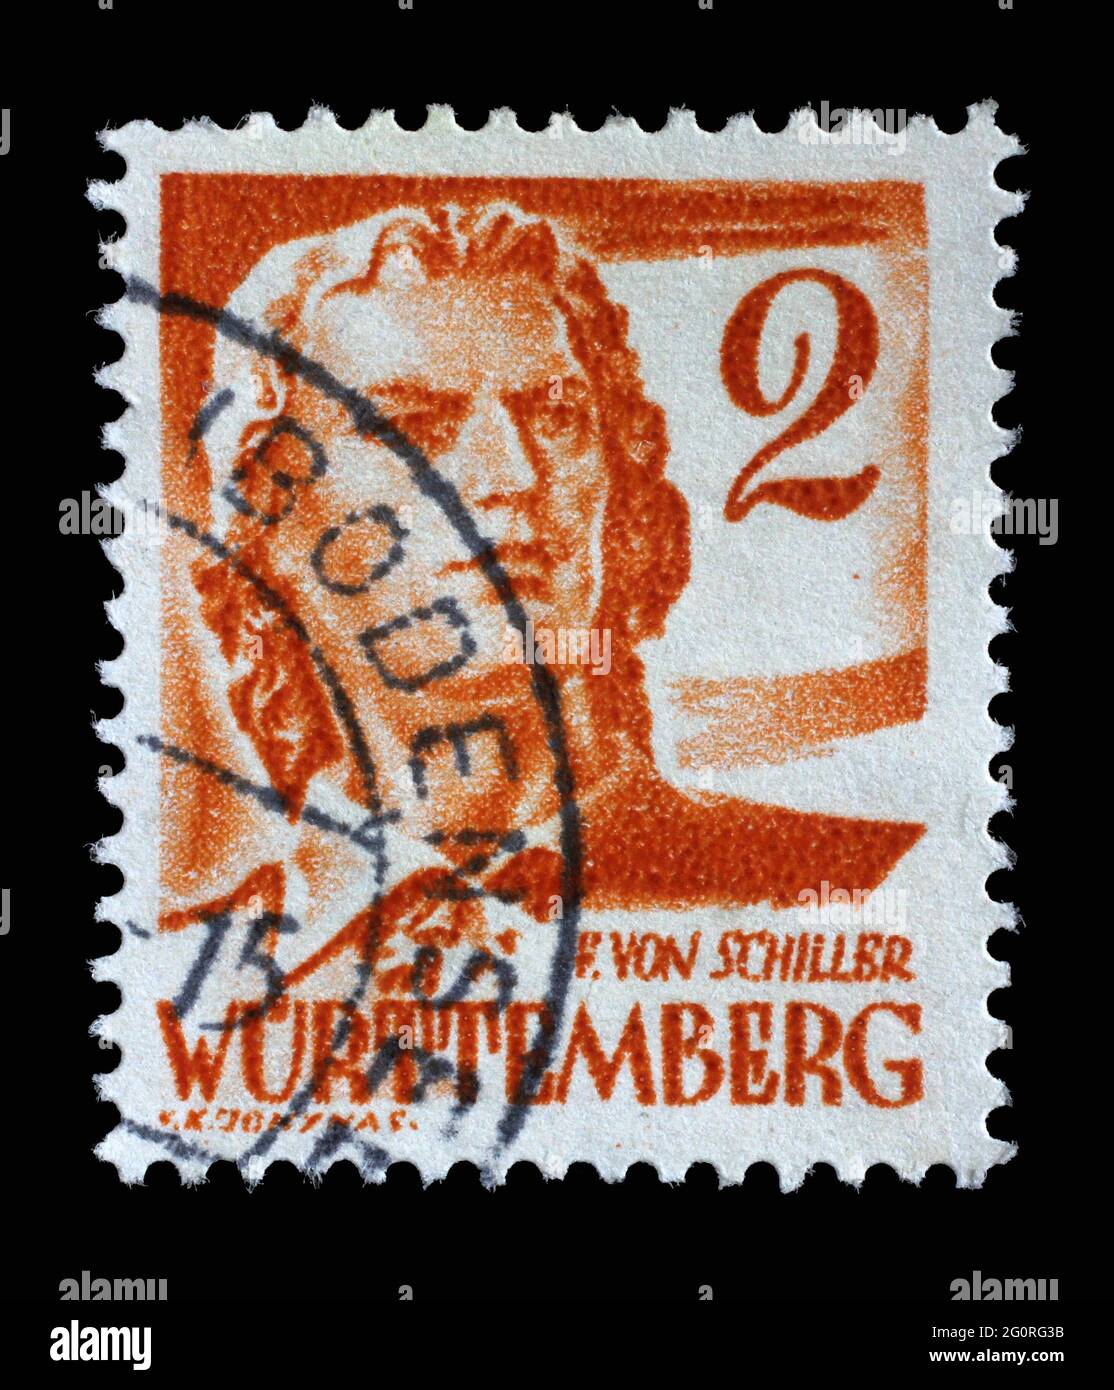 Timbre imprimé en Allemagne, l'occupation française du Wurtemberg montre Friedrich von Schiller, poète et écrivain, vers 1948 Banque D'Images